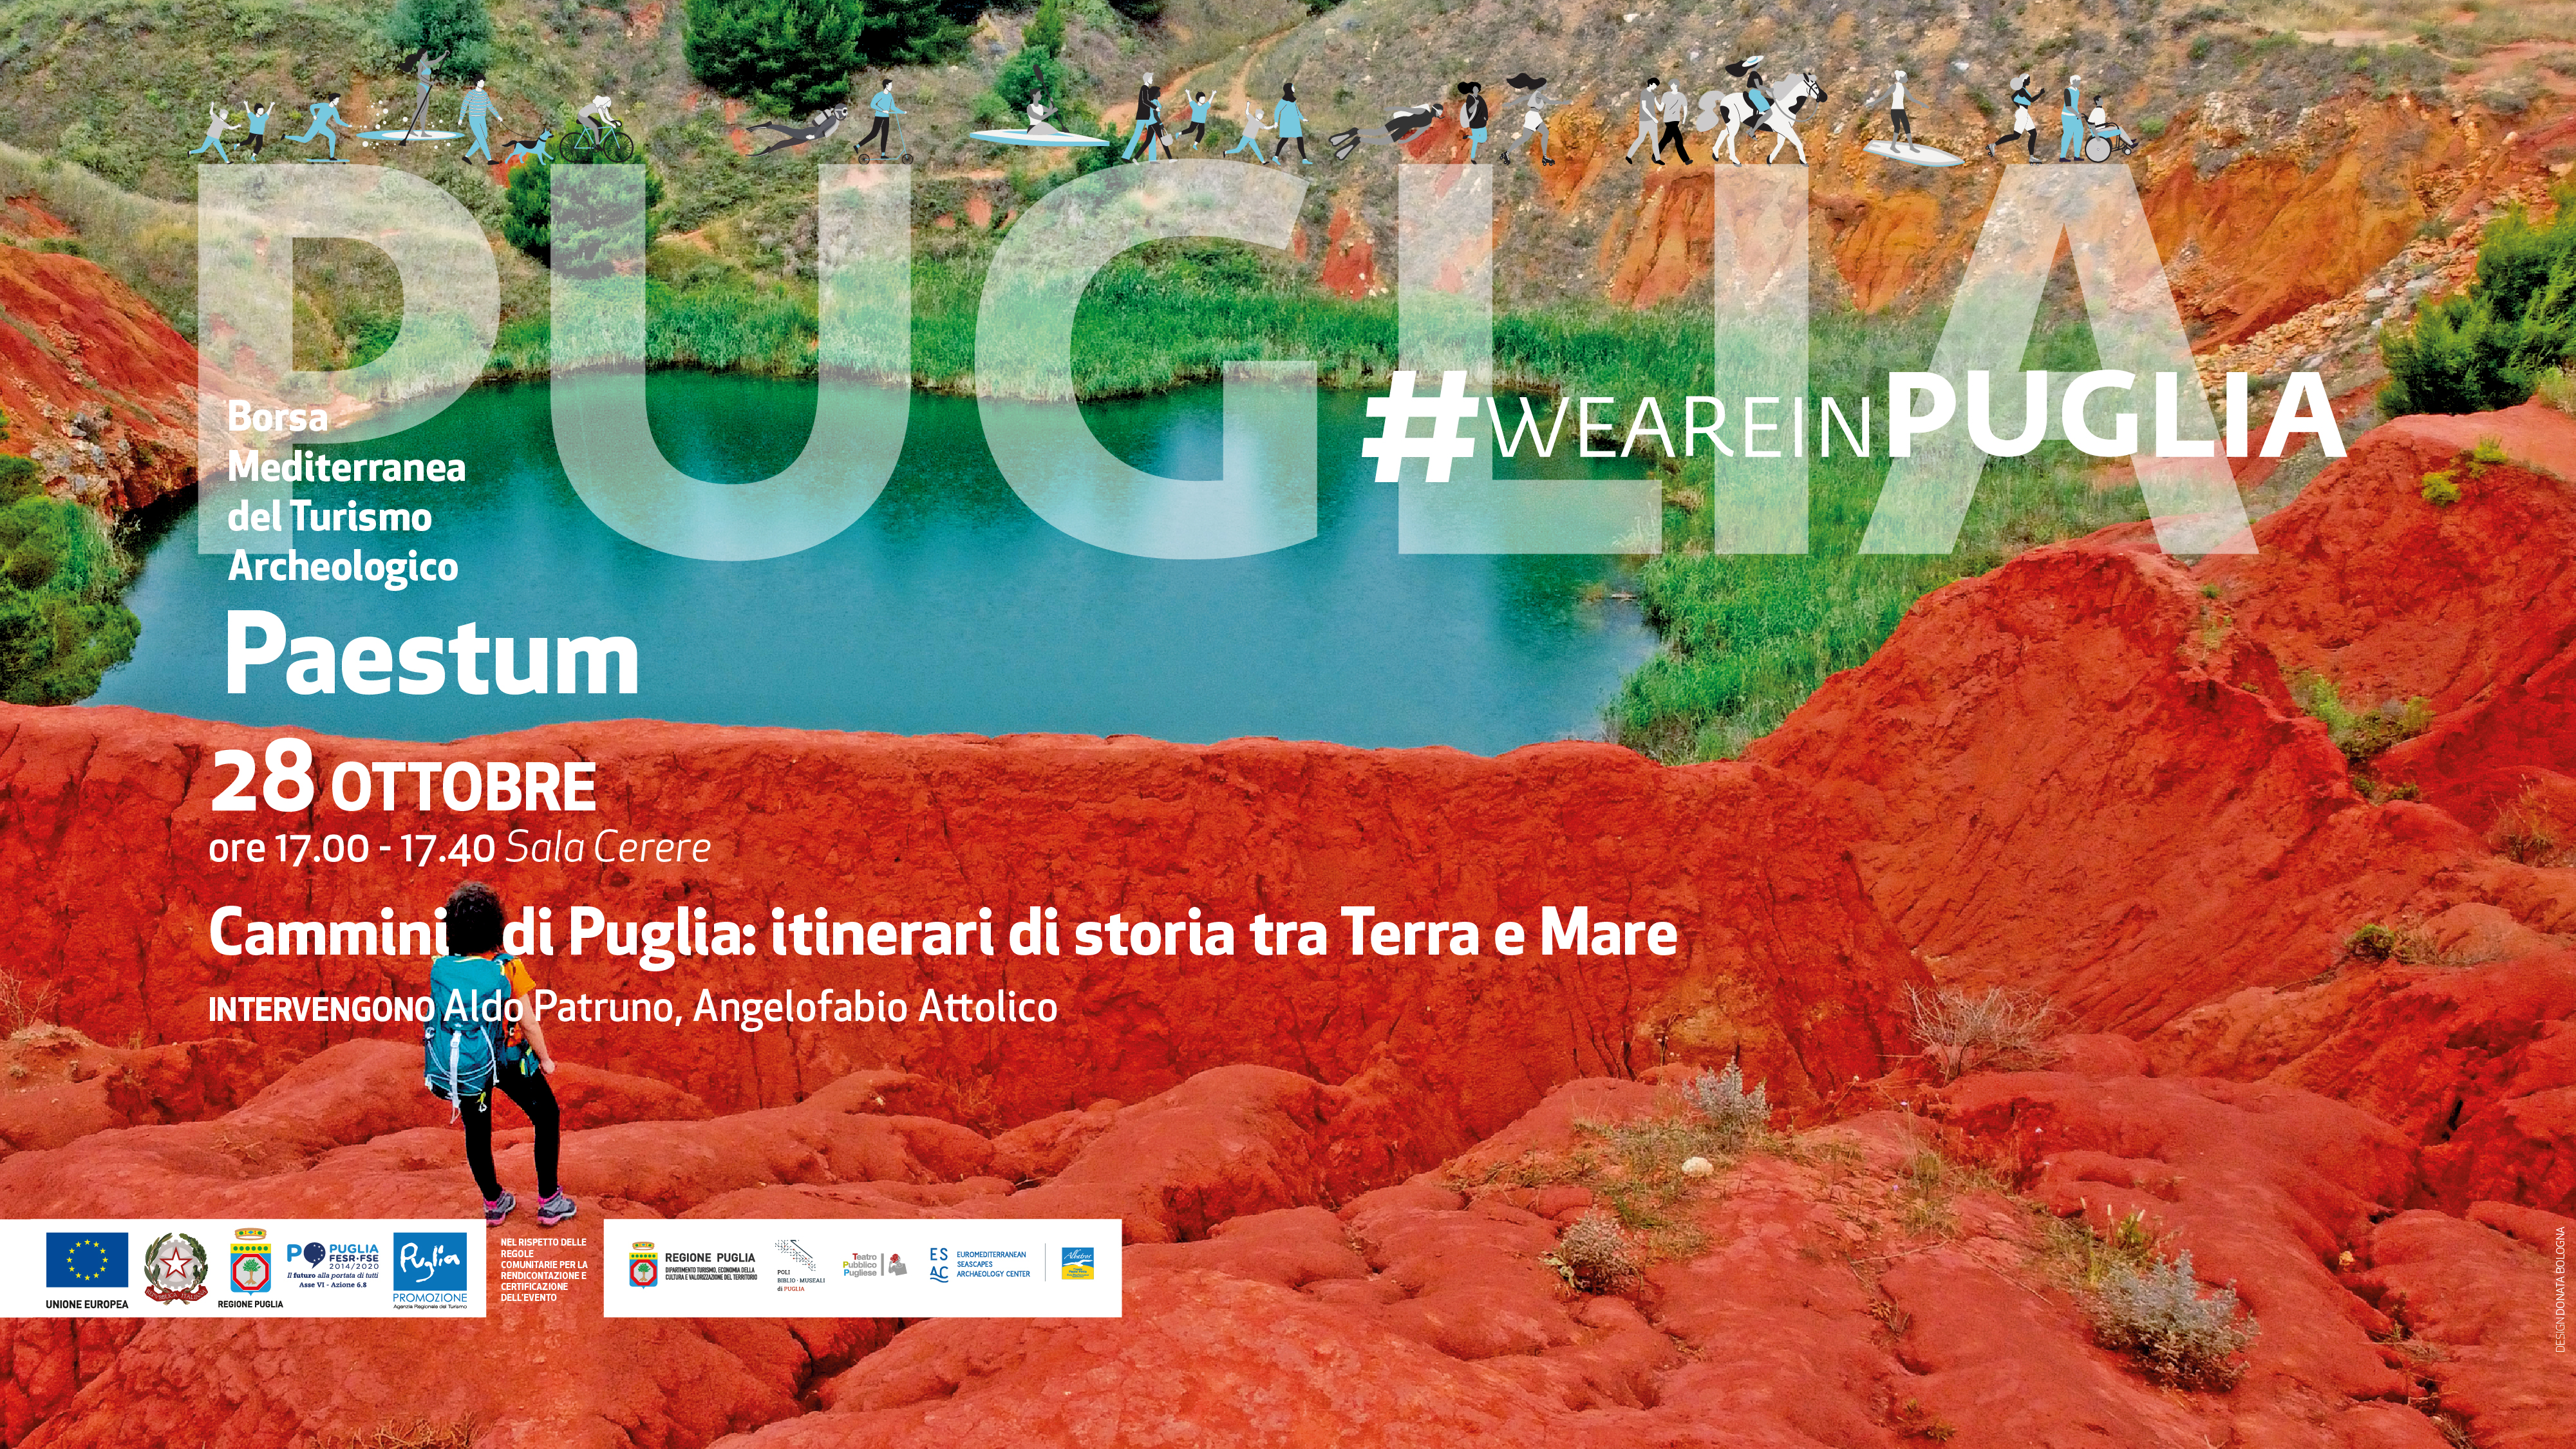 Galleria La Regione Puglia alla Borsa Mediterranea del Turismo Archeologico di Paestum dal 27 al 30 ottobre 2022 - Diapositiva 5 di 5